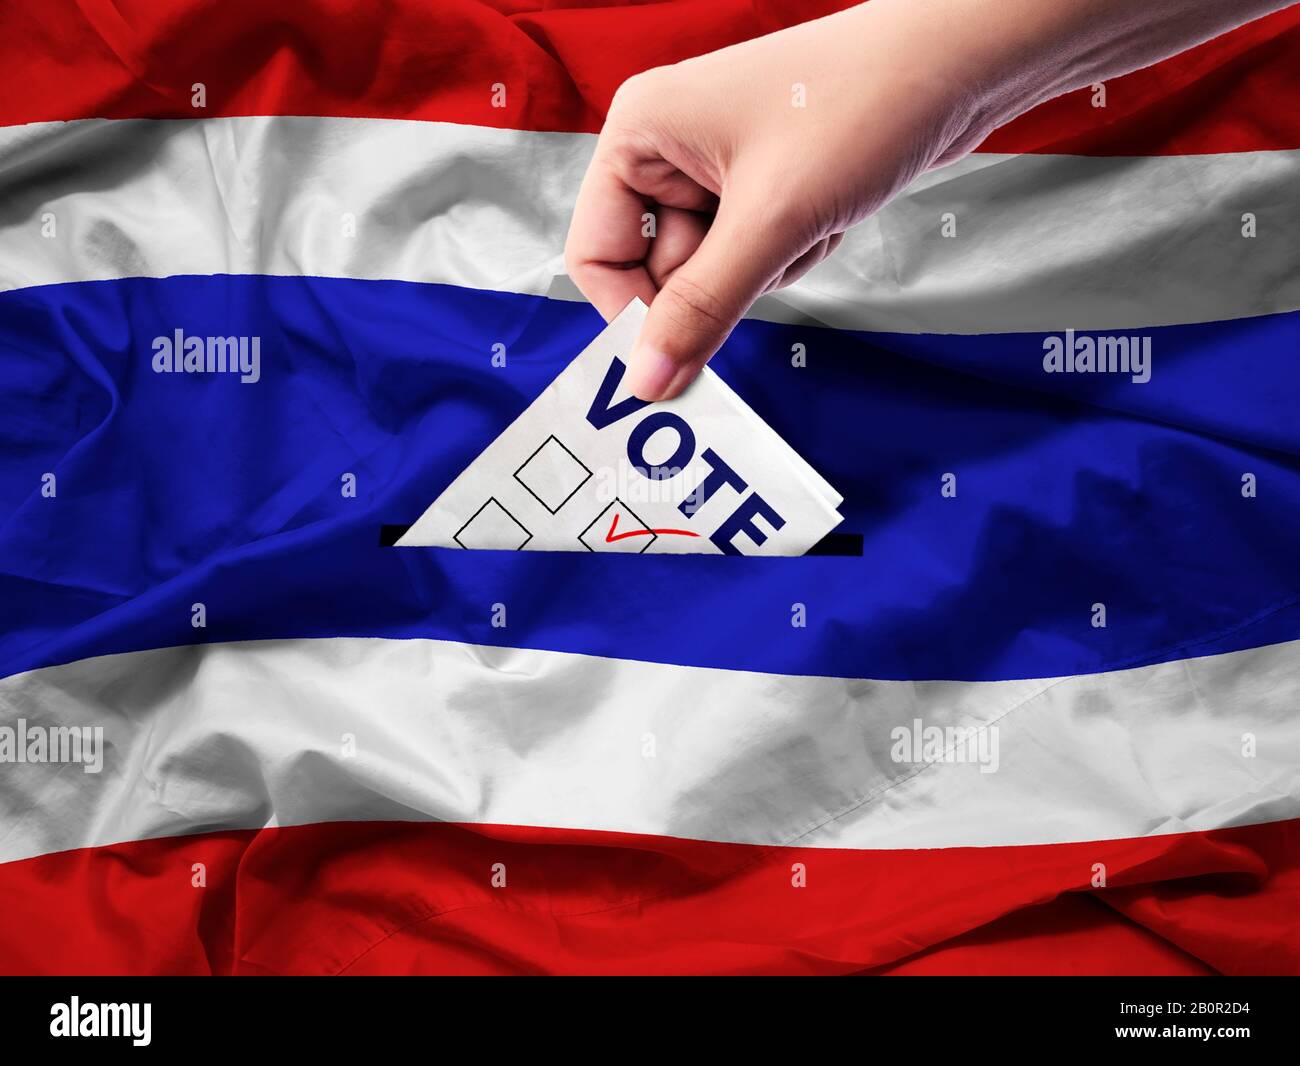 Demokratie und Wahlen in Thailand Konzept: Nahaufnahme einer Person, die bei Wahlen eine Stimme abgegeben hat, während sie auf Leinwand gewählt wurde. Hintergrund der thailändischen Flagge. Stockfoto